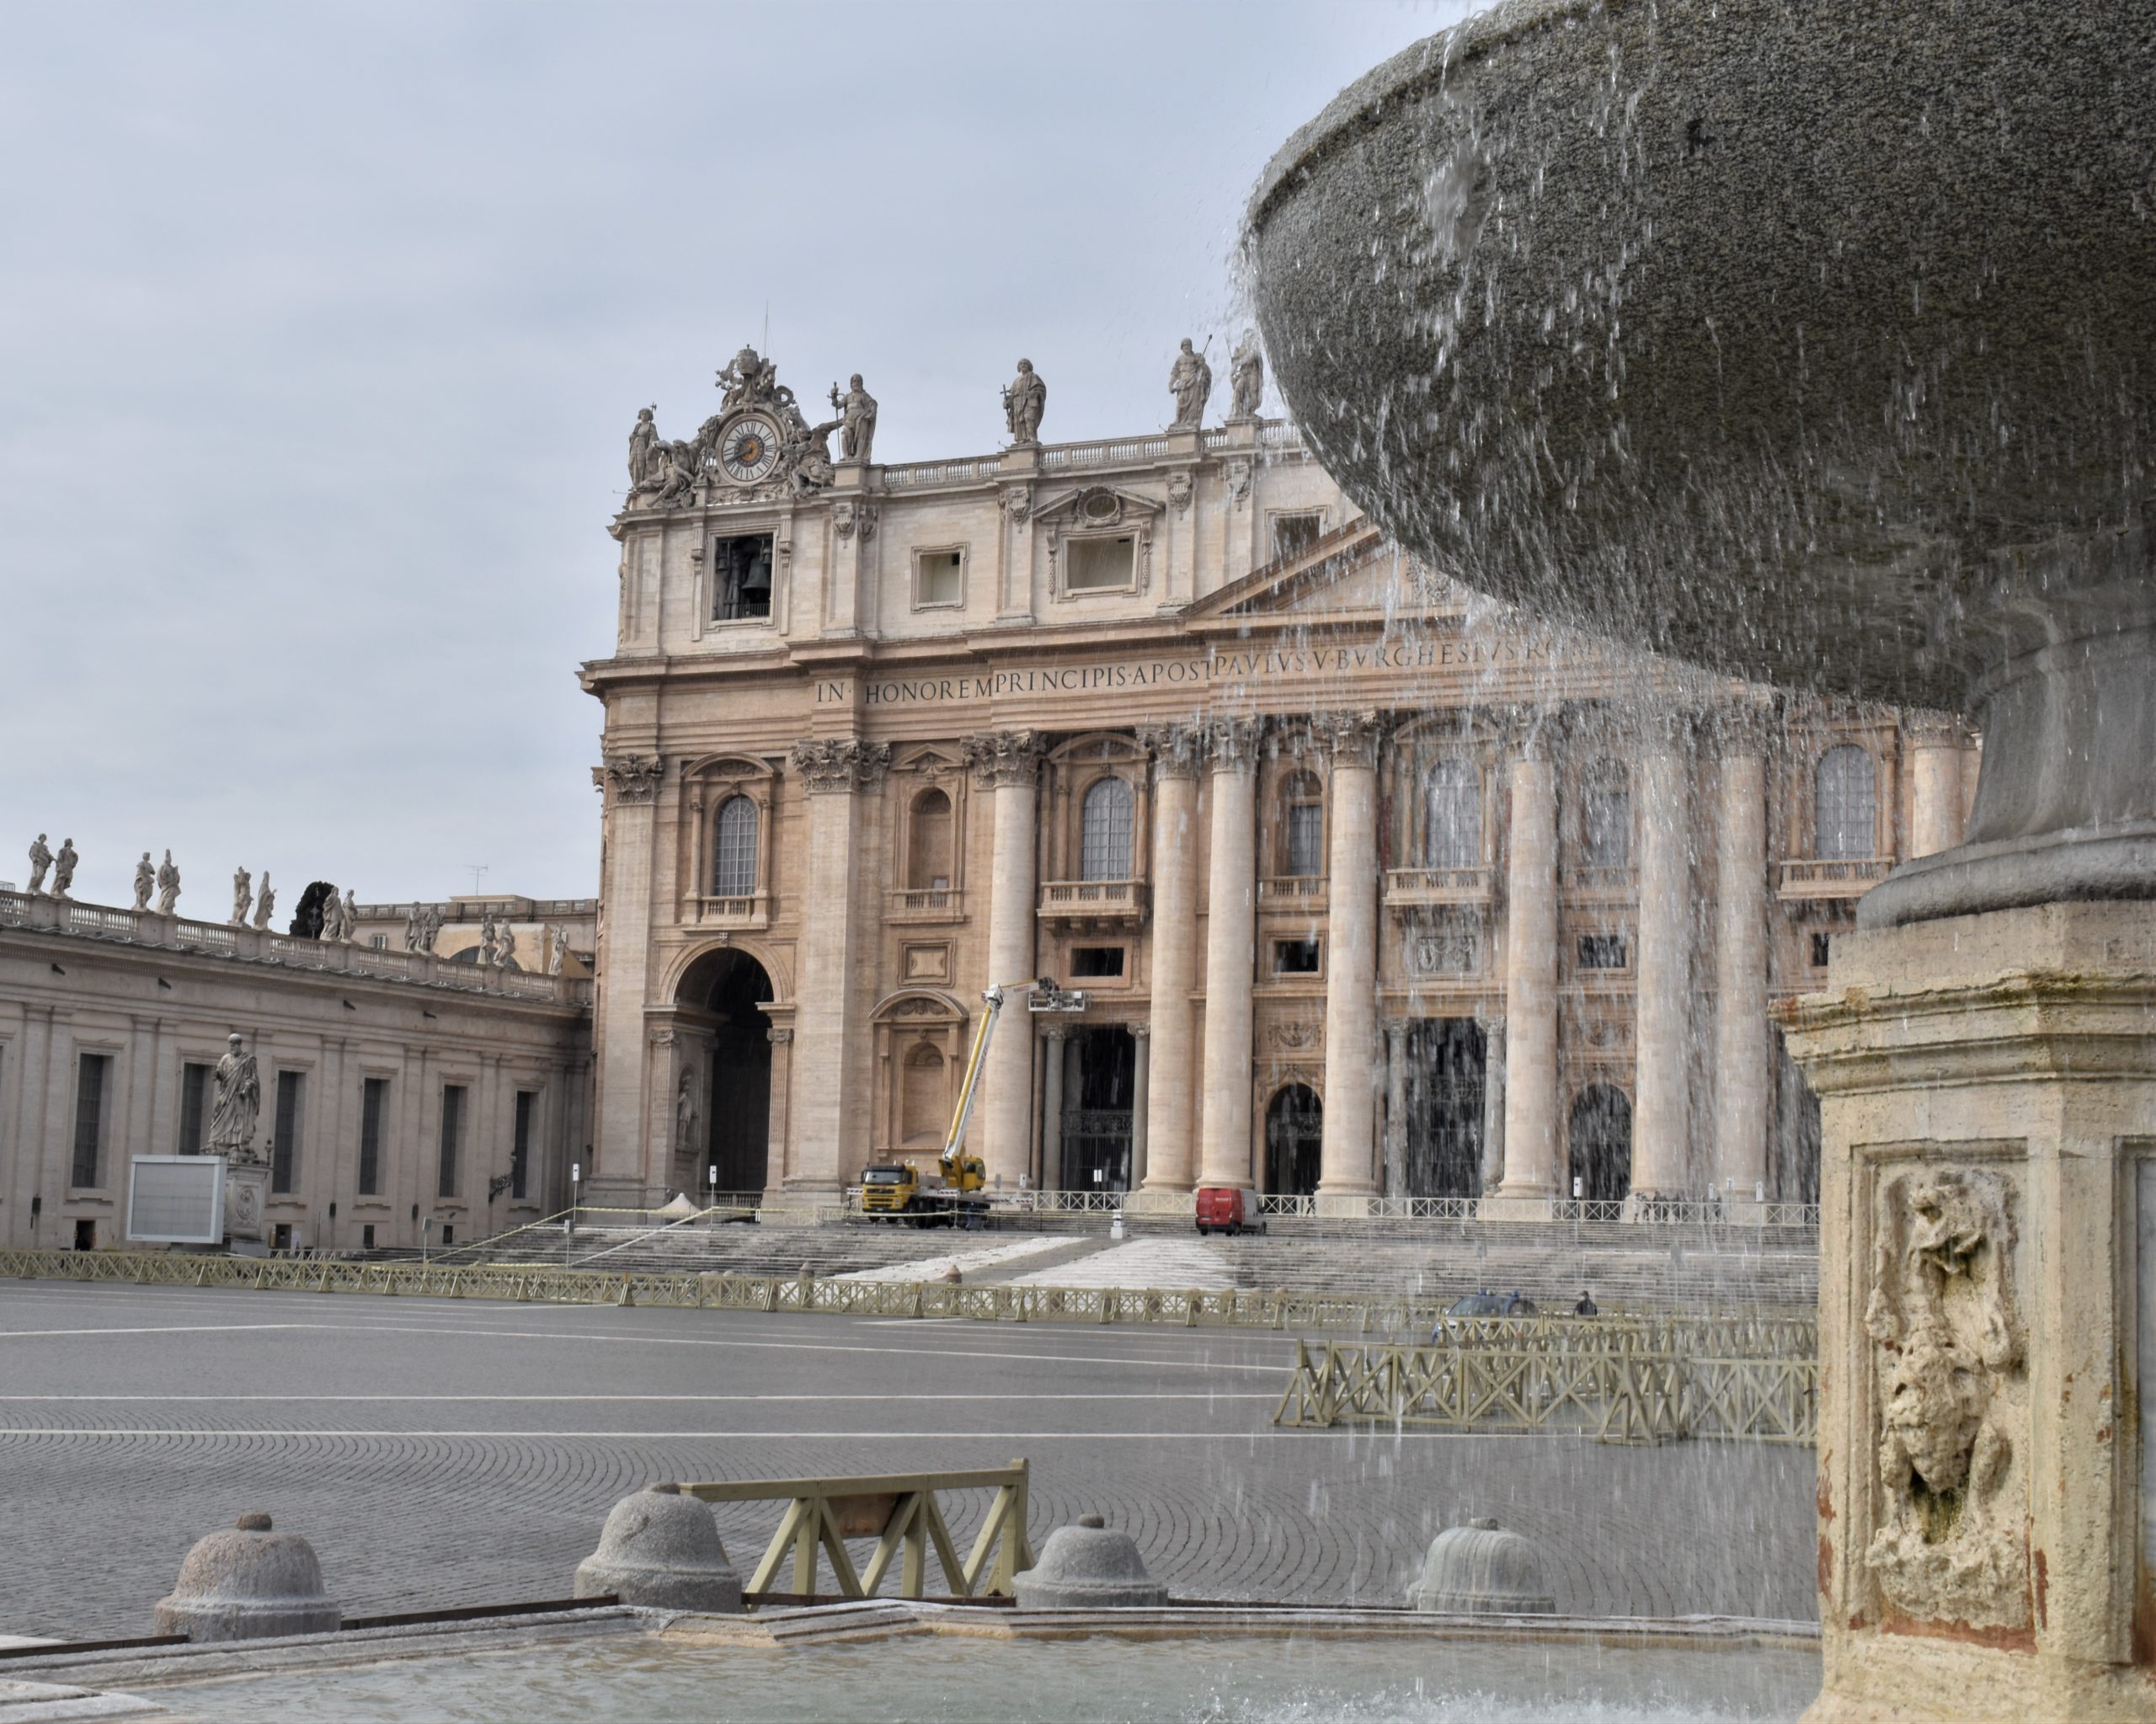 Lo scorrere dell'acqua riempie i silenzi di piazza San Pietro